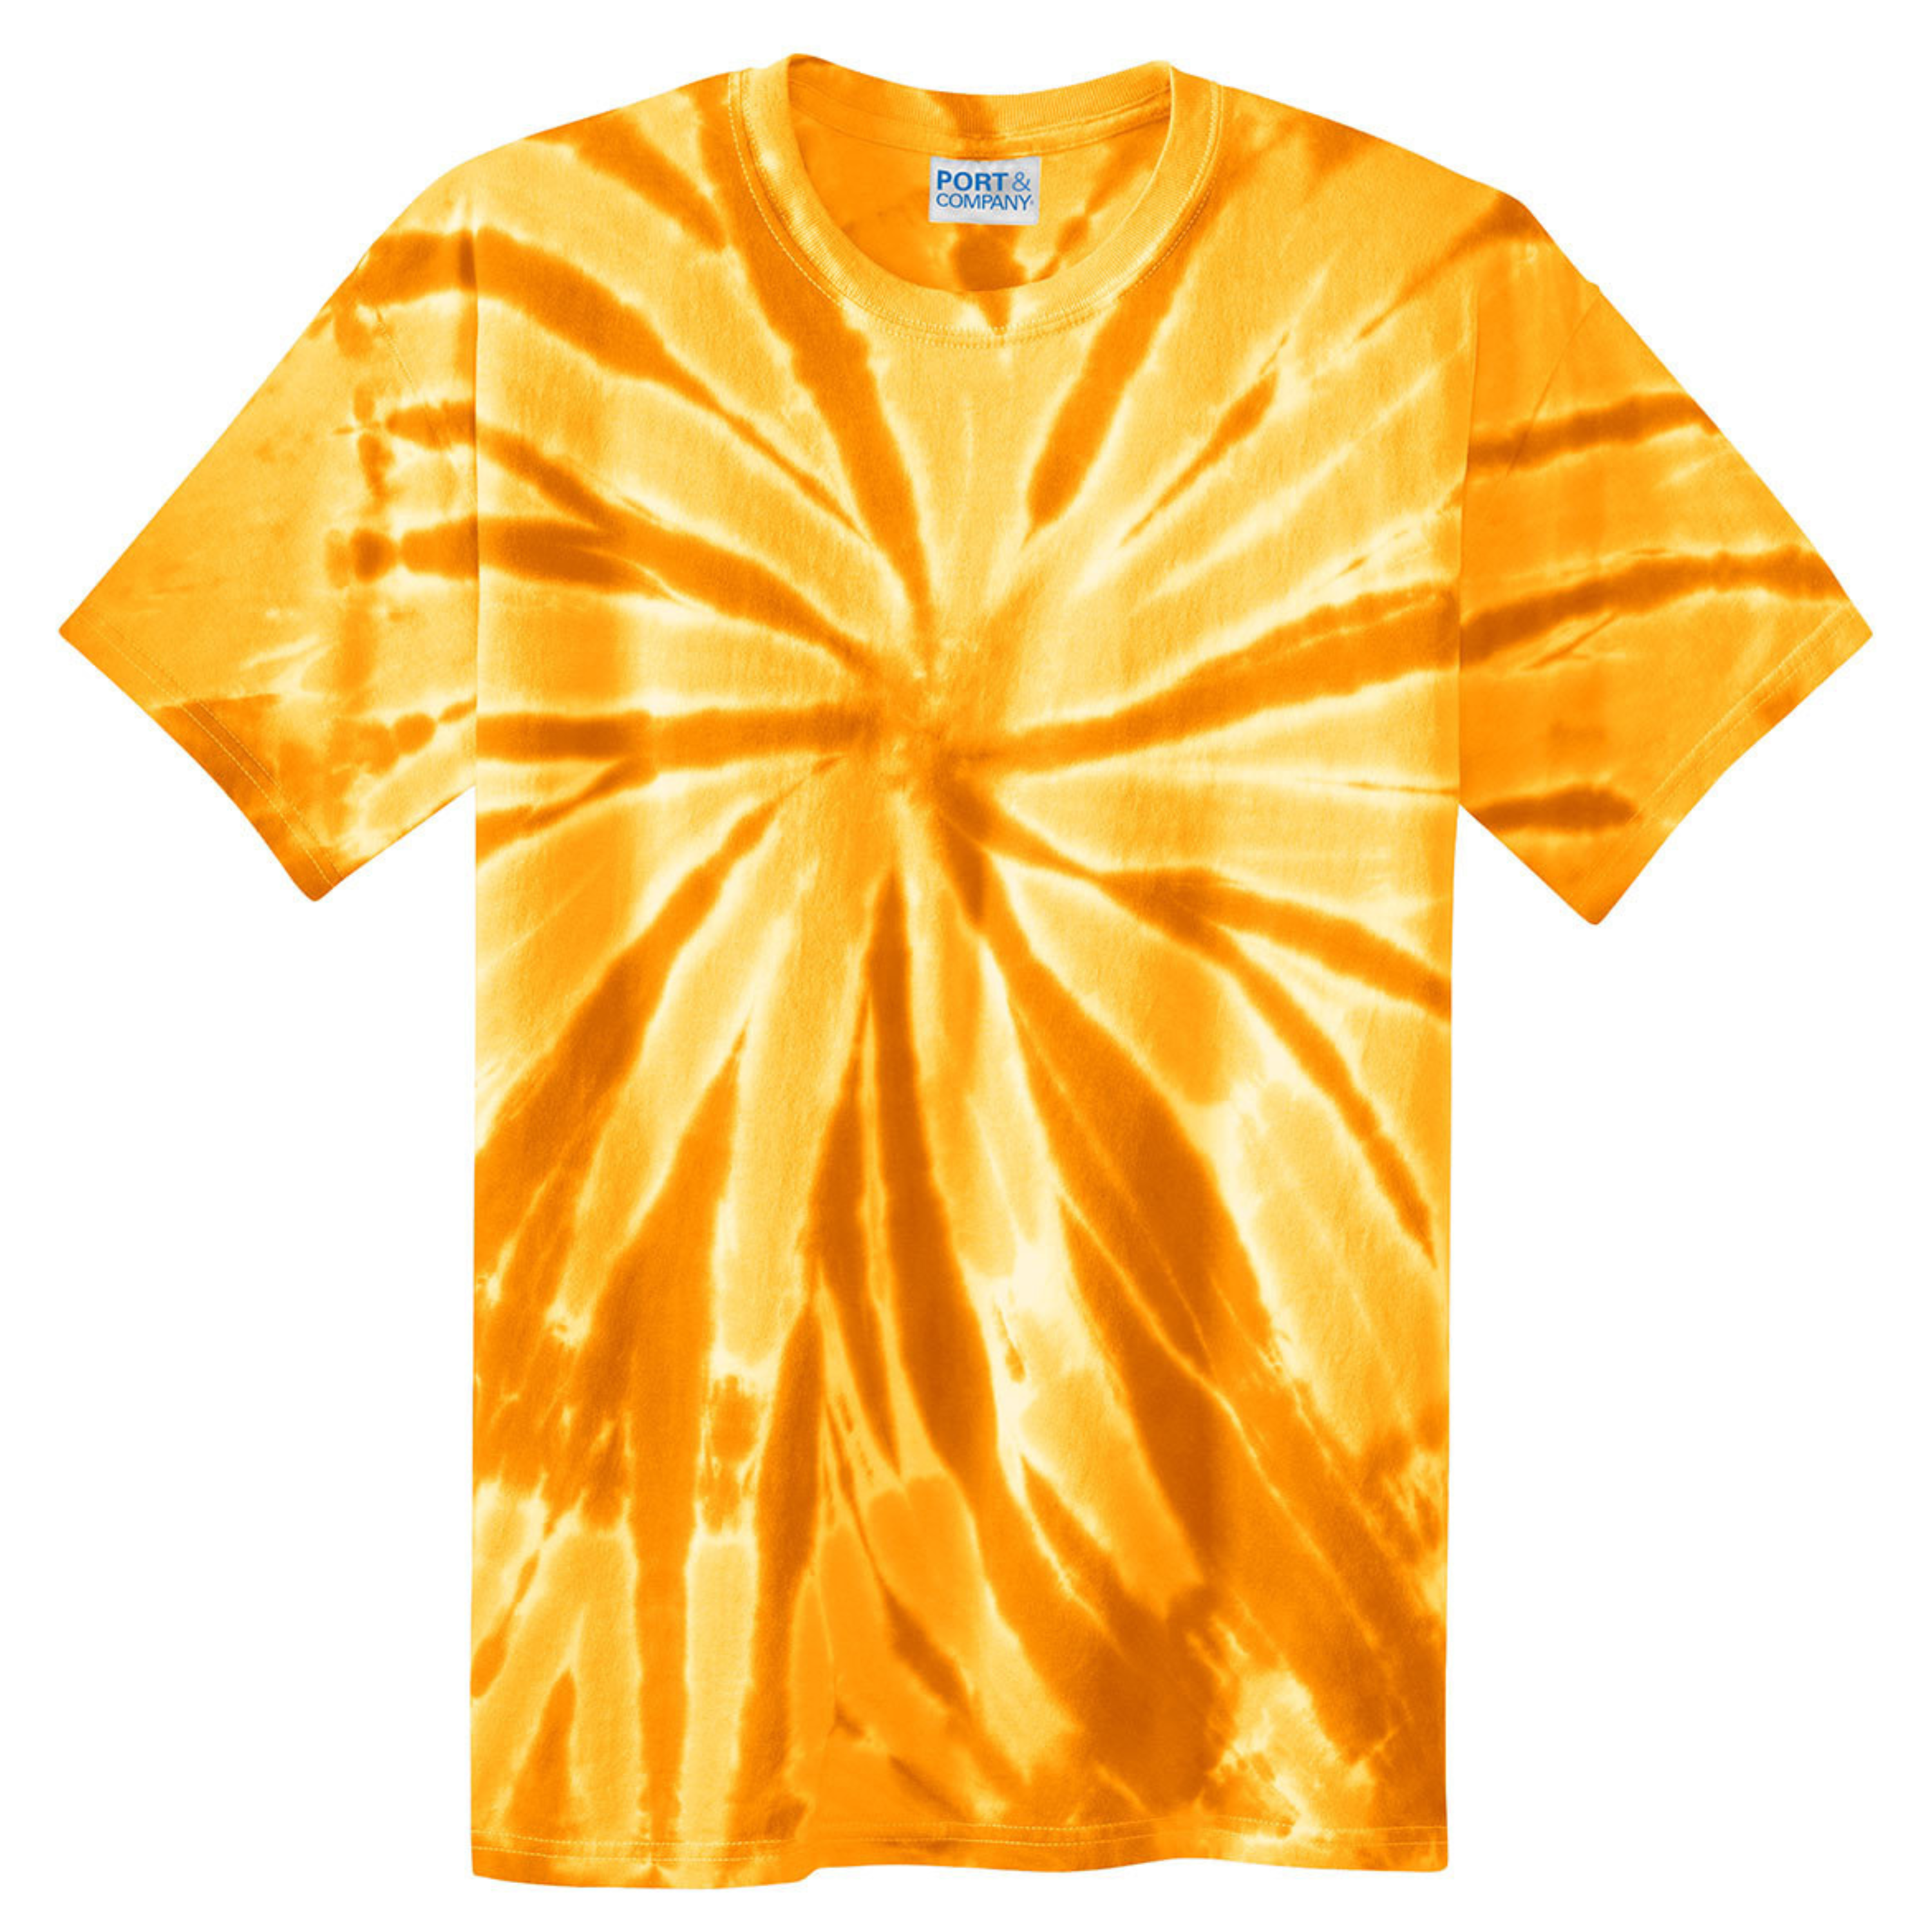 Unisex Tie-Dye T-shirt